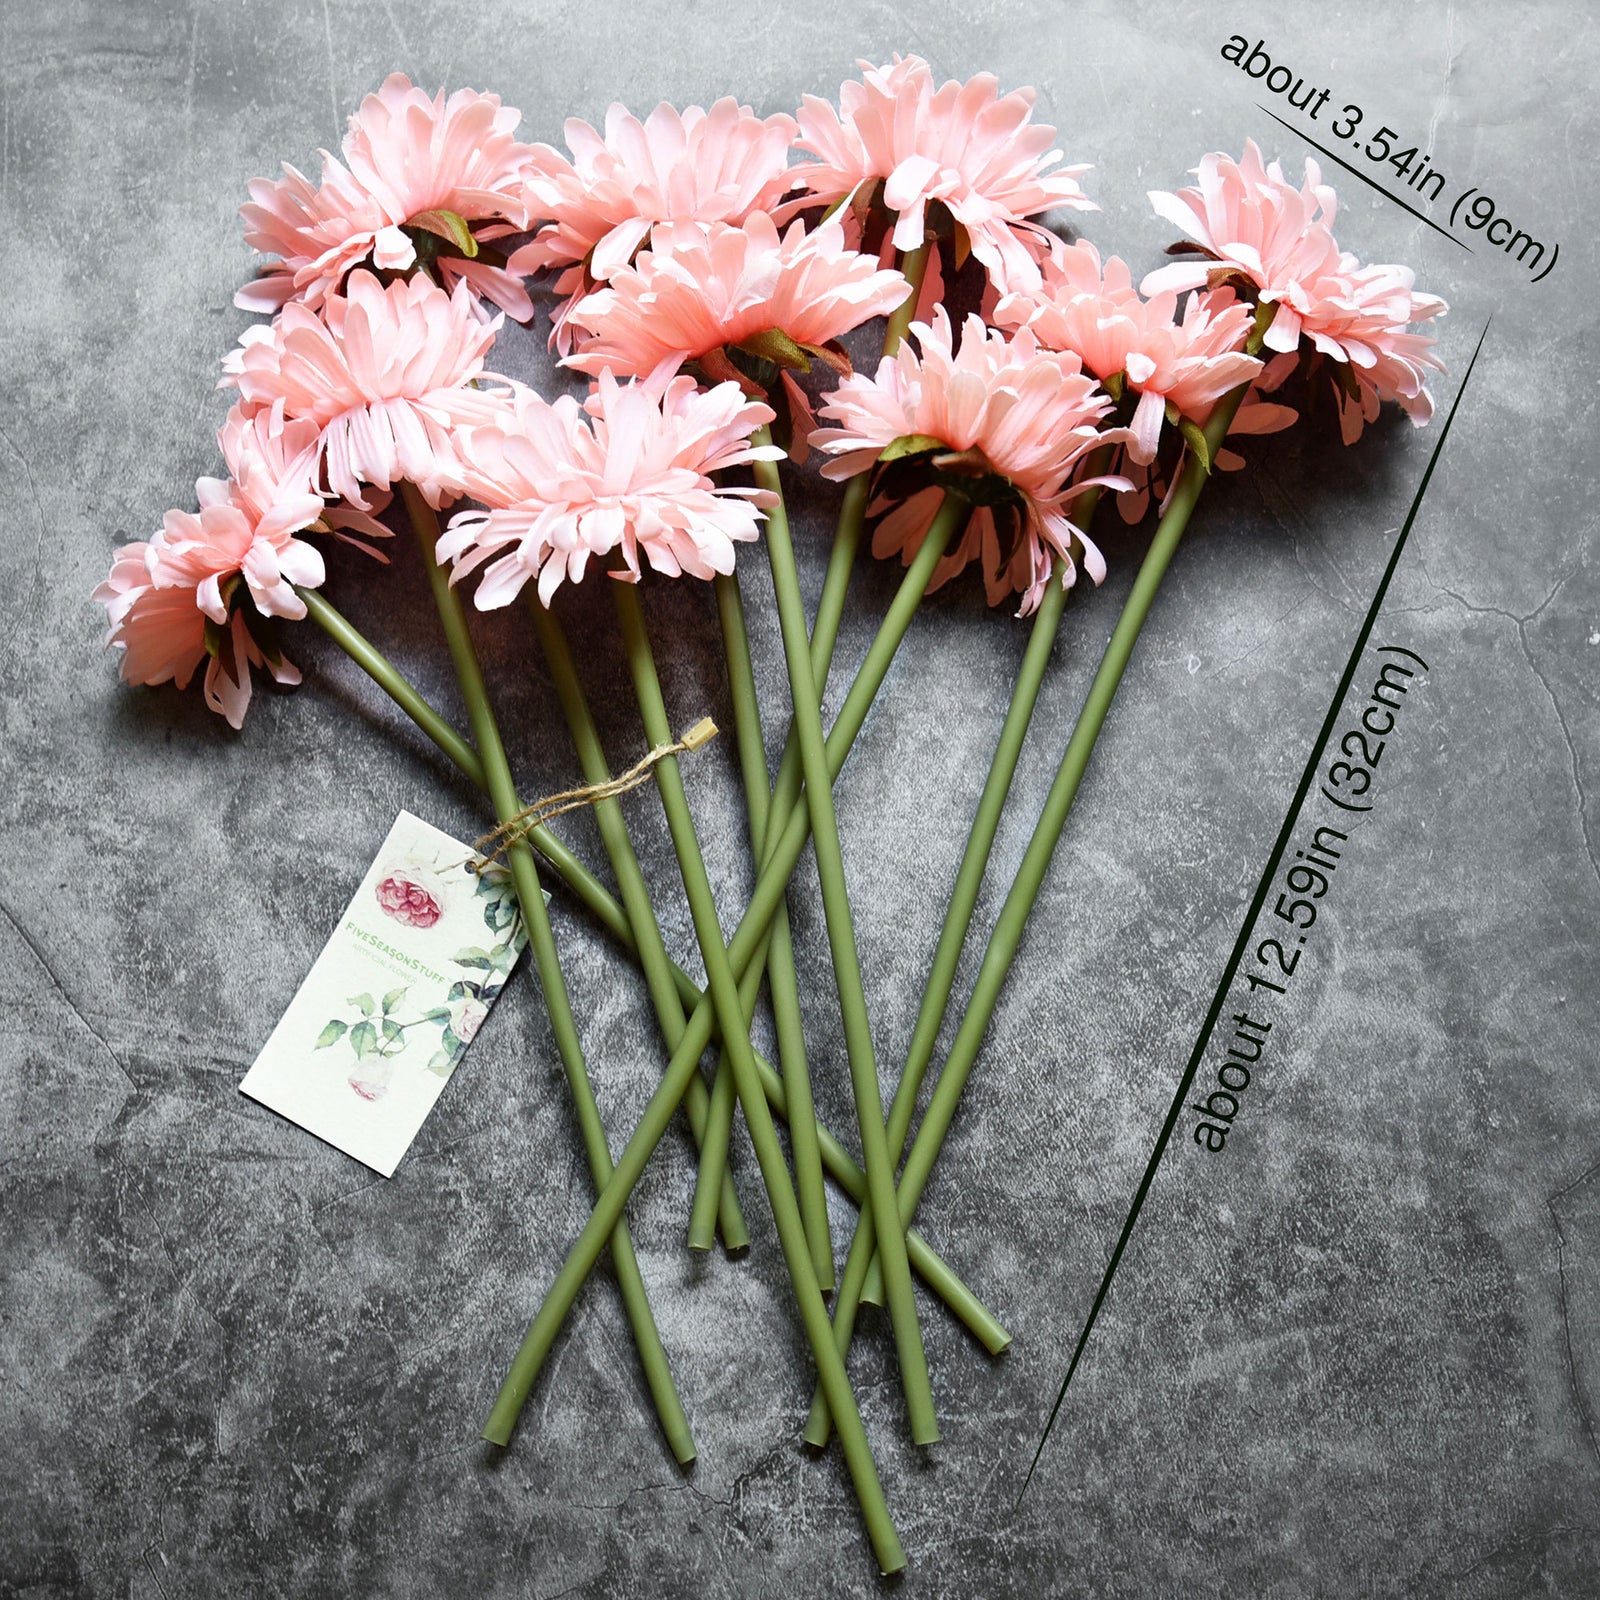 FiveSeasonStuff 10 Stems of Artificial Silk Gerbera Flowers & Bouquet, for Home Décor/DIY Flower Arrangement Decoration, 32cm (12.6 inches)